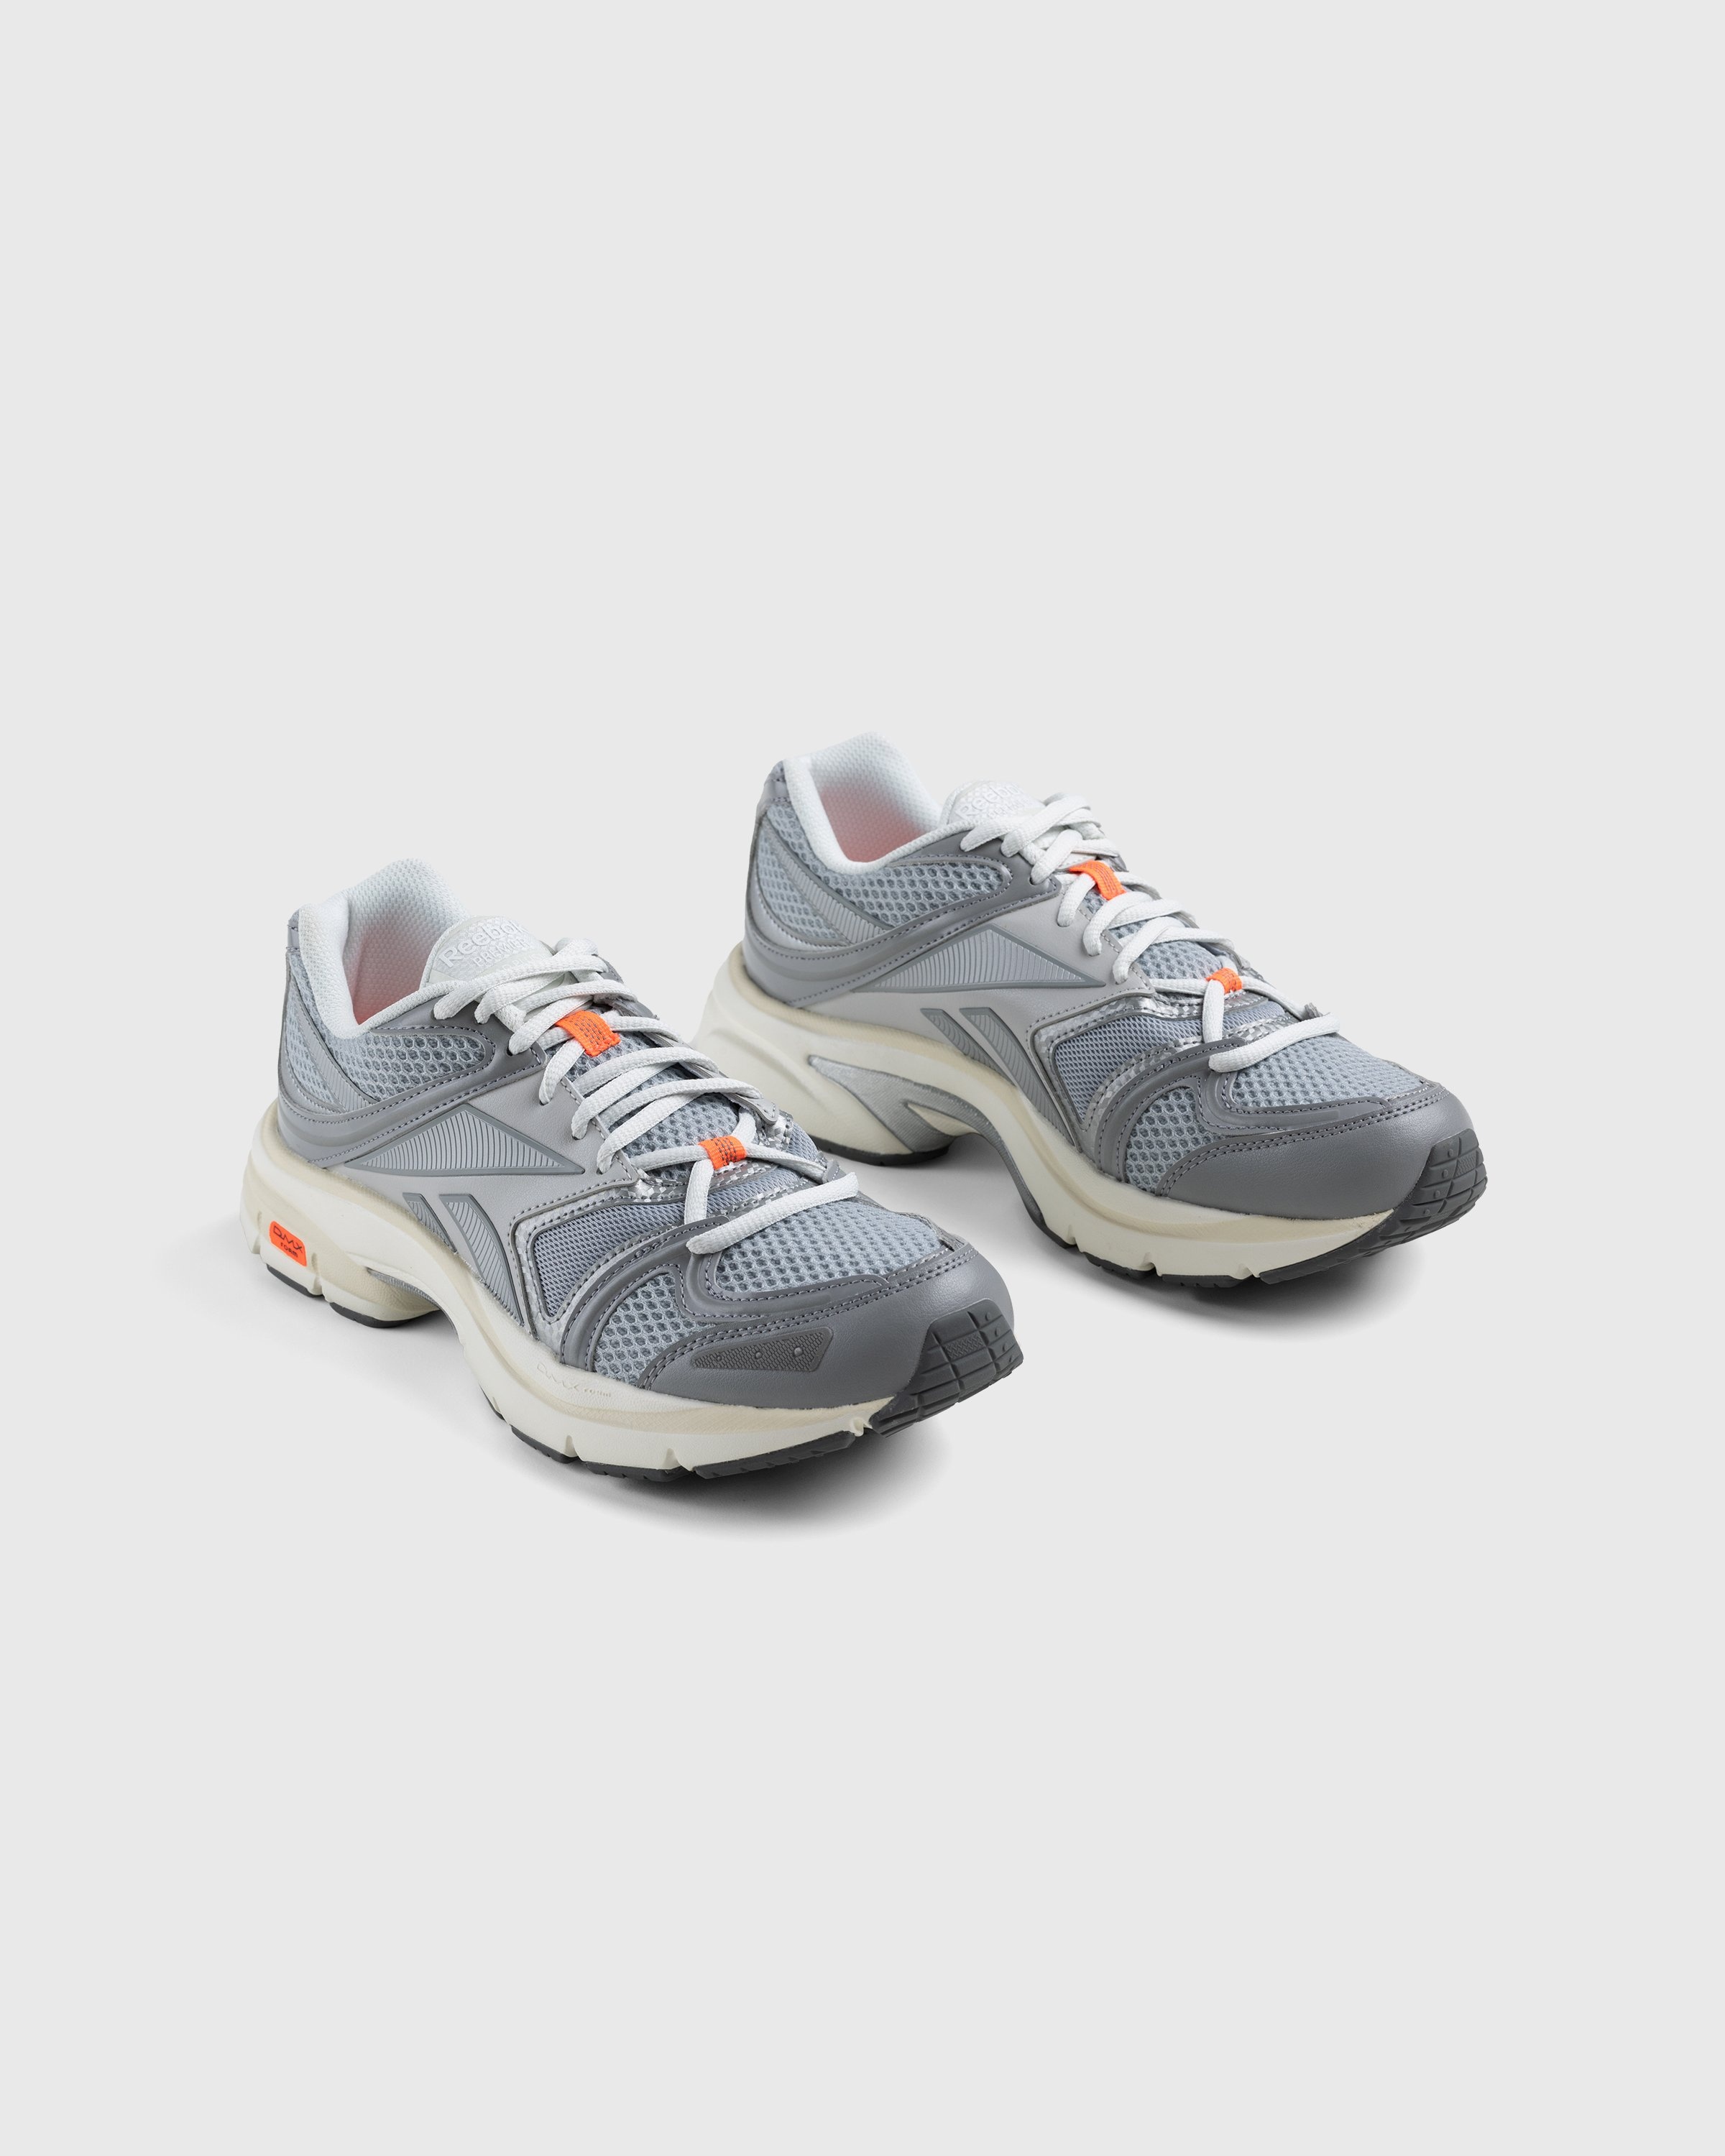 Reebok – Premier Road Plus VI Grey - Low Top Sneakers - Grey - Image 4